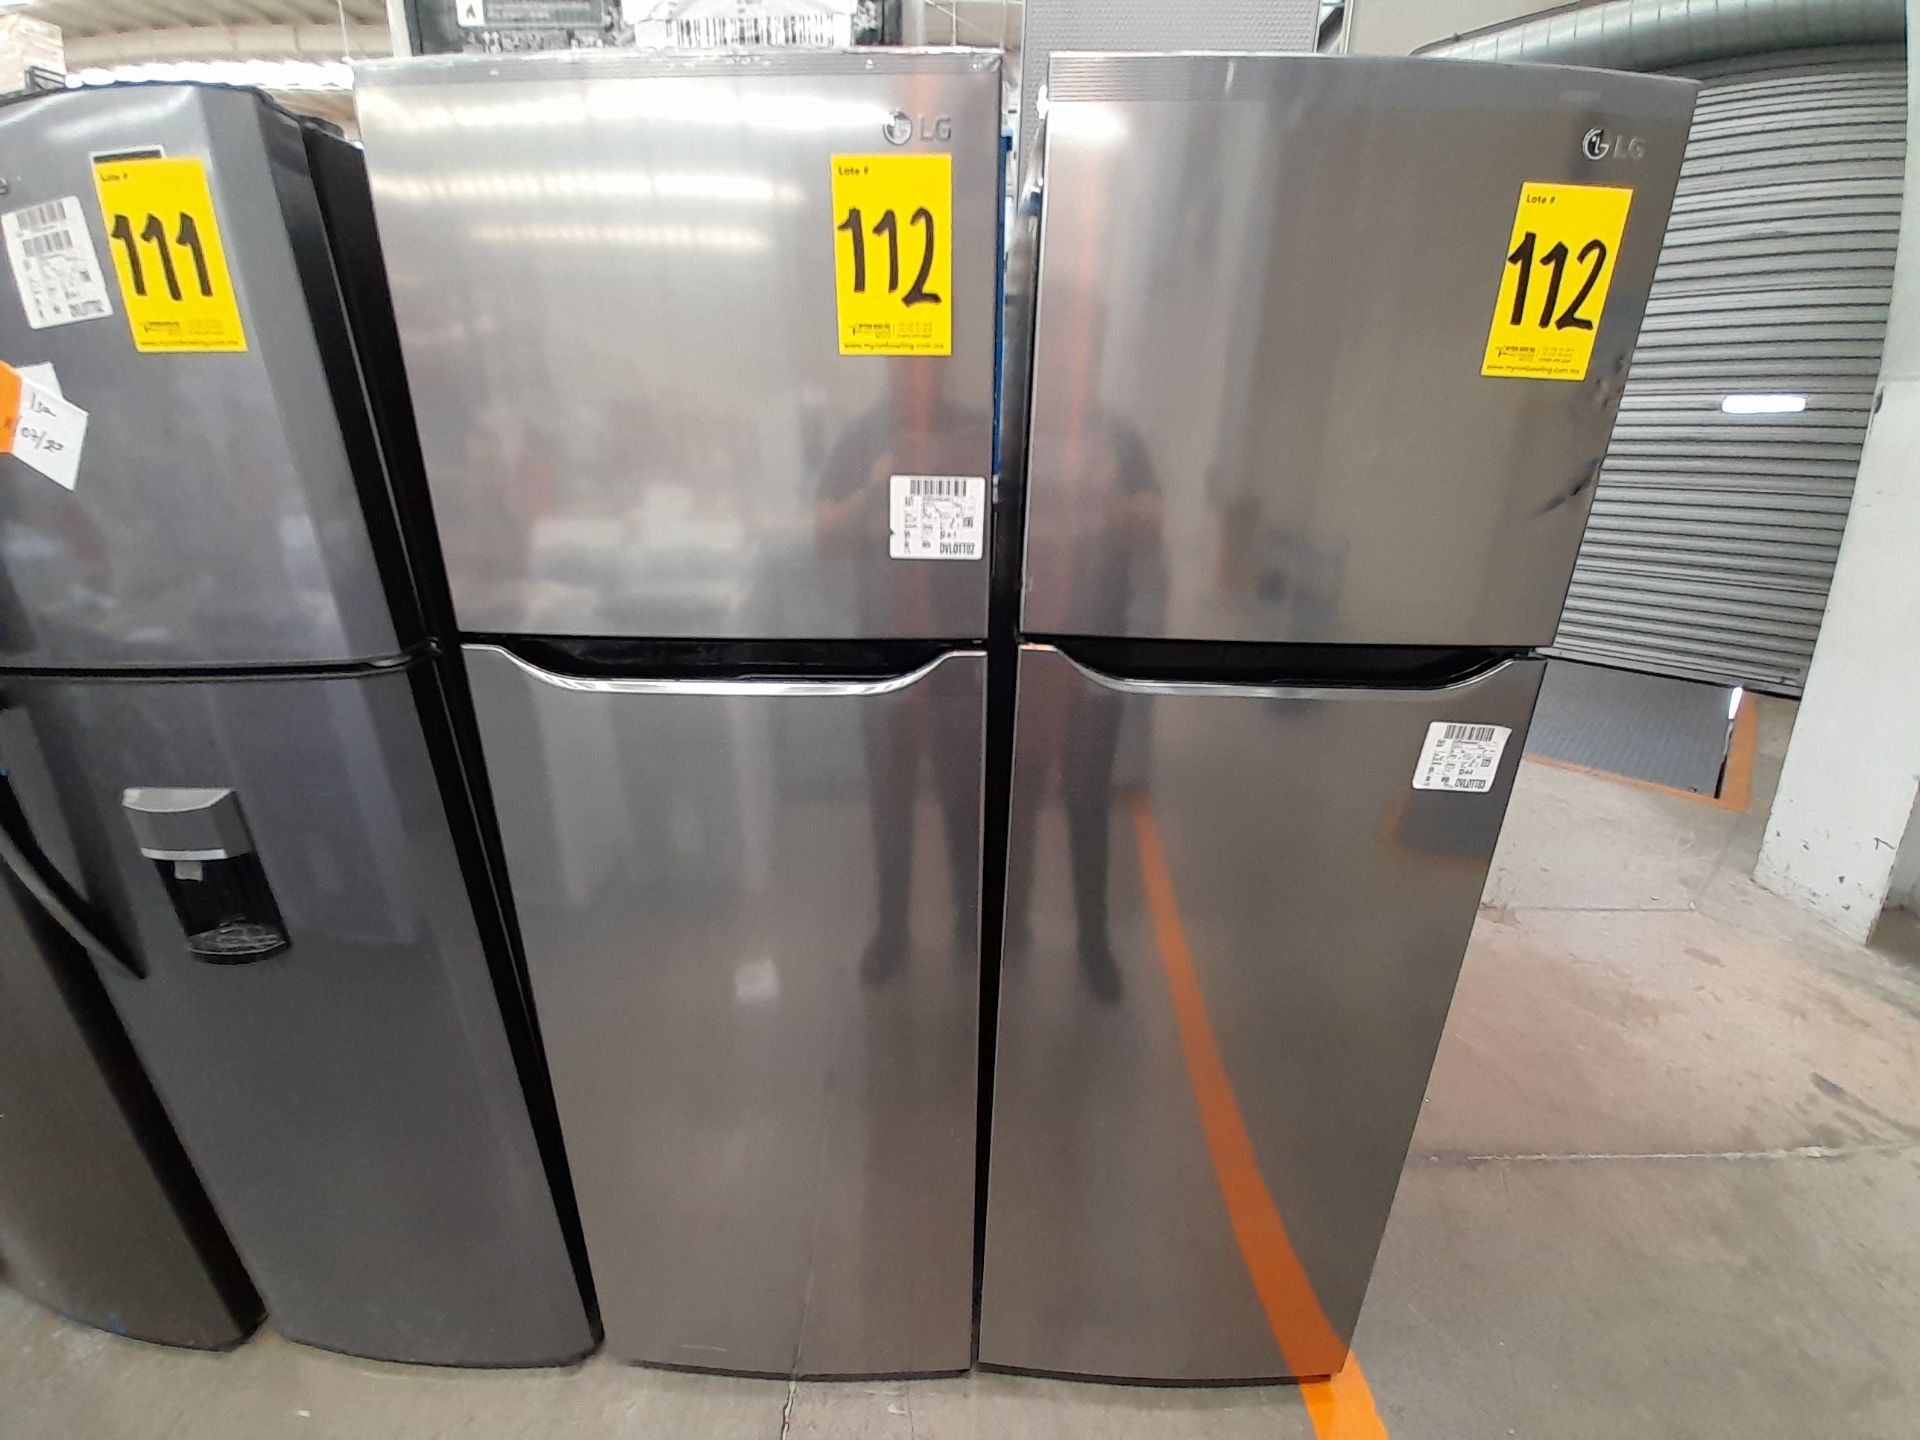 Lote de 2 refrigeradores contiene: 1 refrigerador Marca LG, Modelo GT29BPPK, Color GRIS; 1 refriger